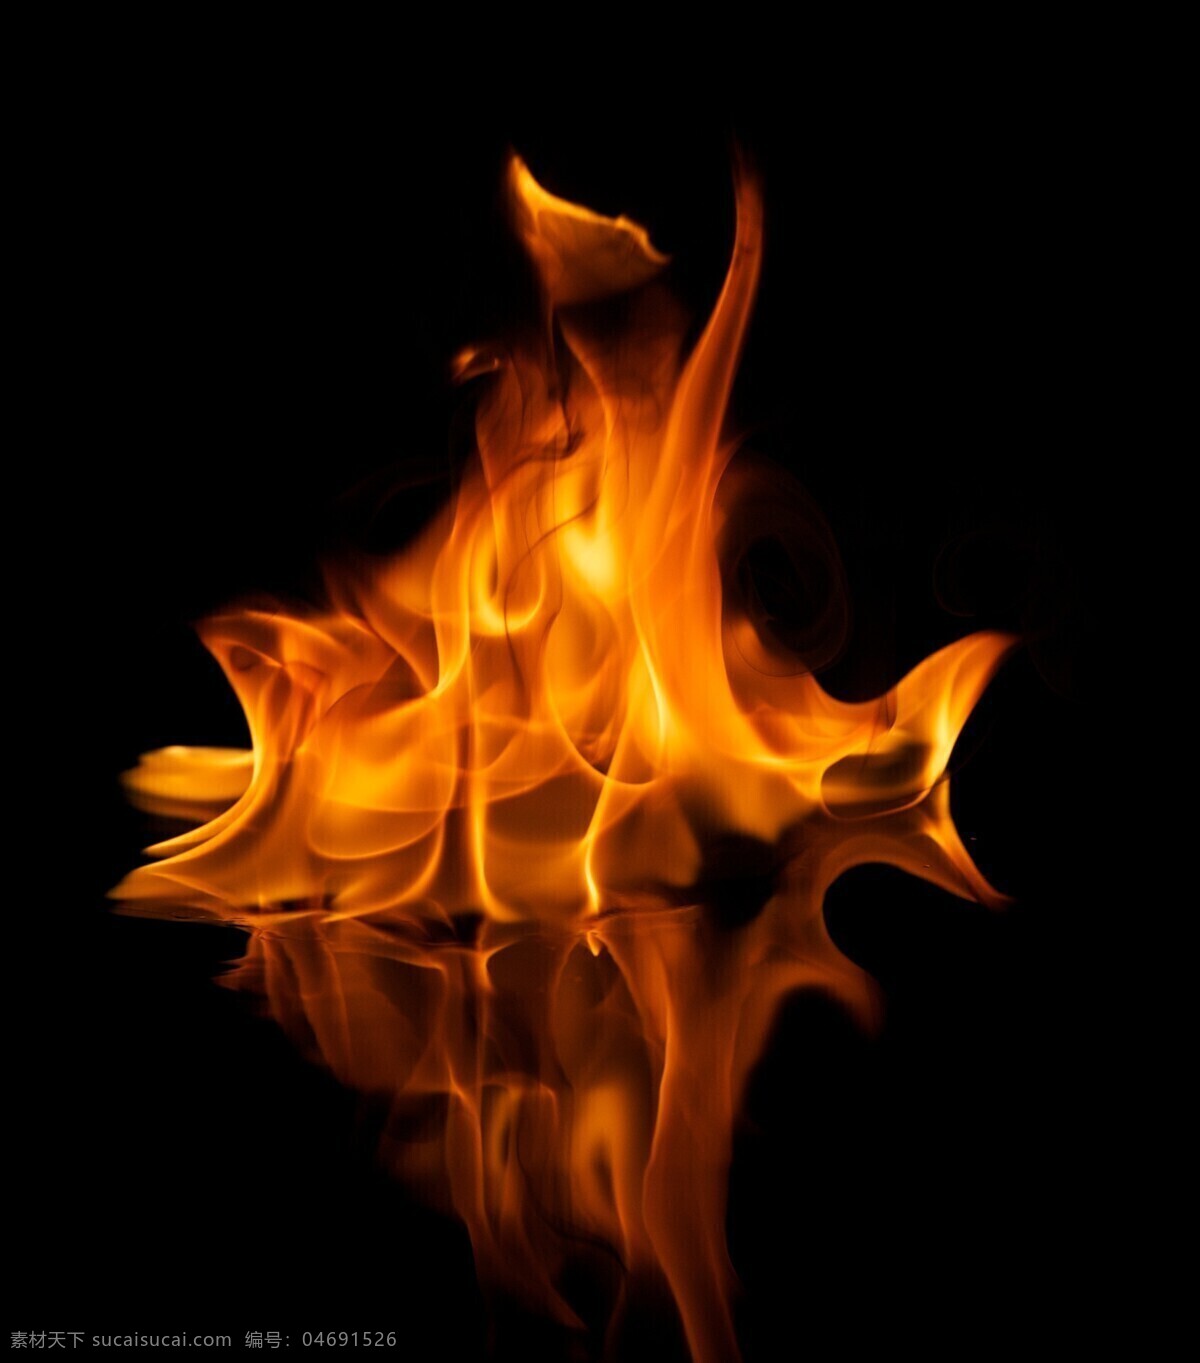 火焰 倒影 火焰与倒影 火苗 燃烧 火焰摄影 冰水烈火 火焰图片 生活百科